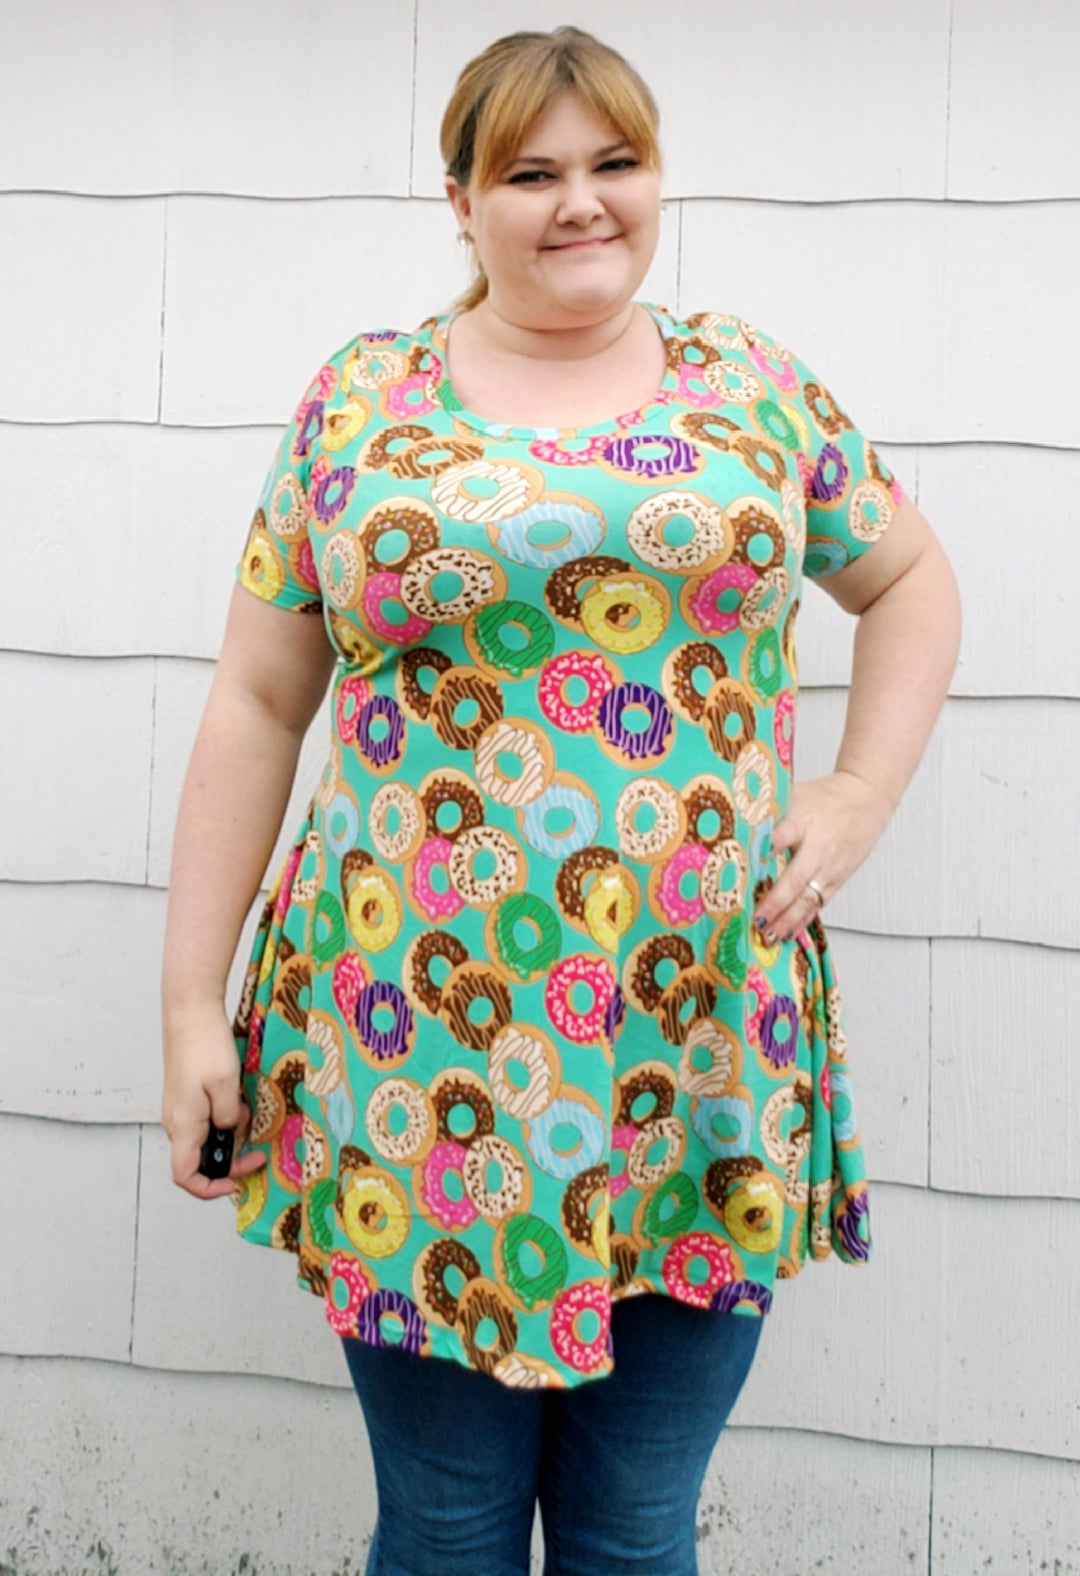 Adult Sweetie Pie Tunic & Dress Pattern